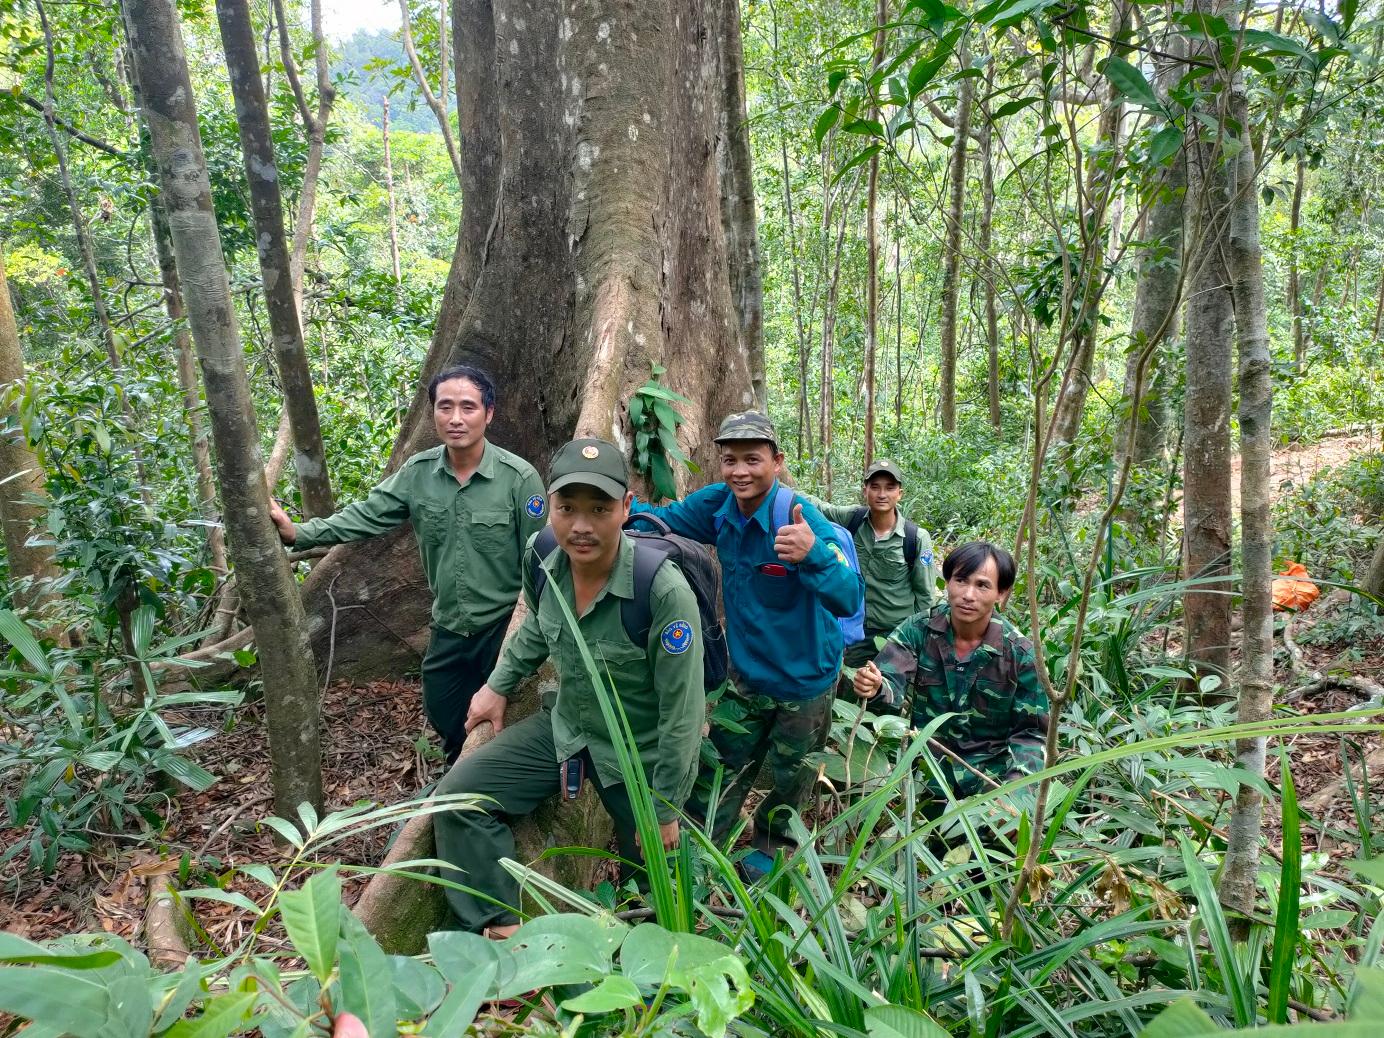 Hoạt động tuần tra, kiểm tra bảo vệ rừng của Trạm Quản lý bảo vệ rừng Hướng Phùng